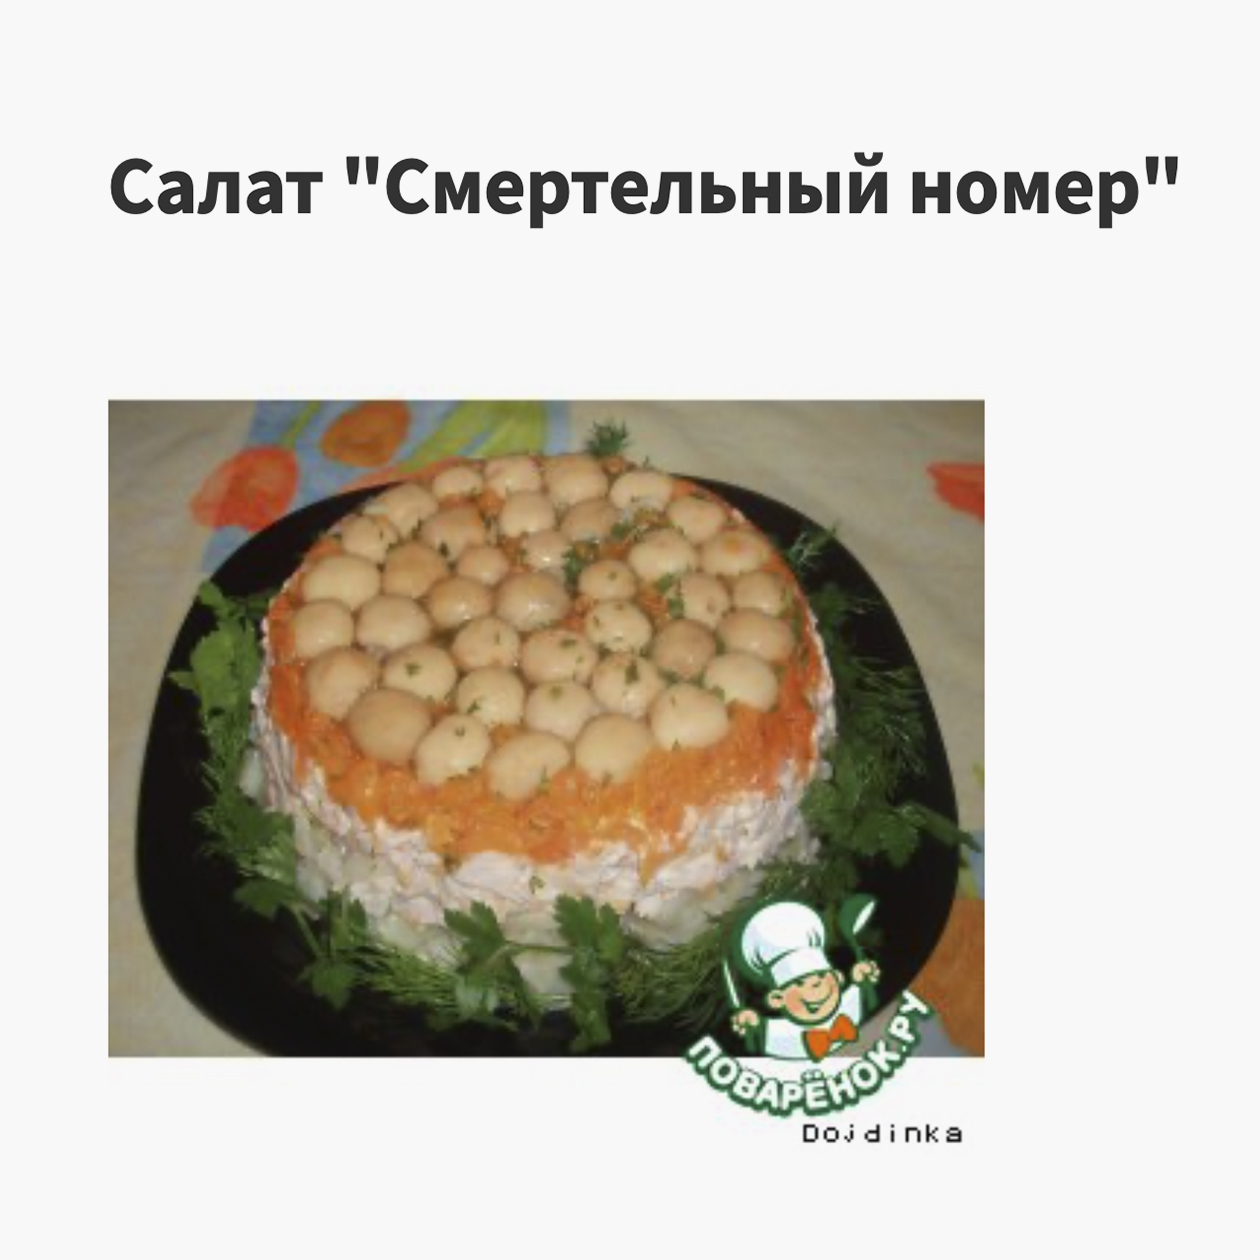 Второе – рецепты на Поварёнок.ру